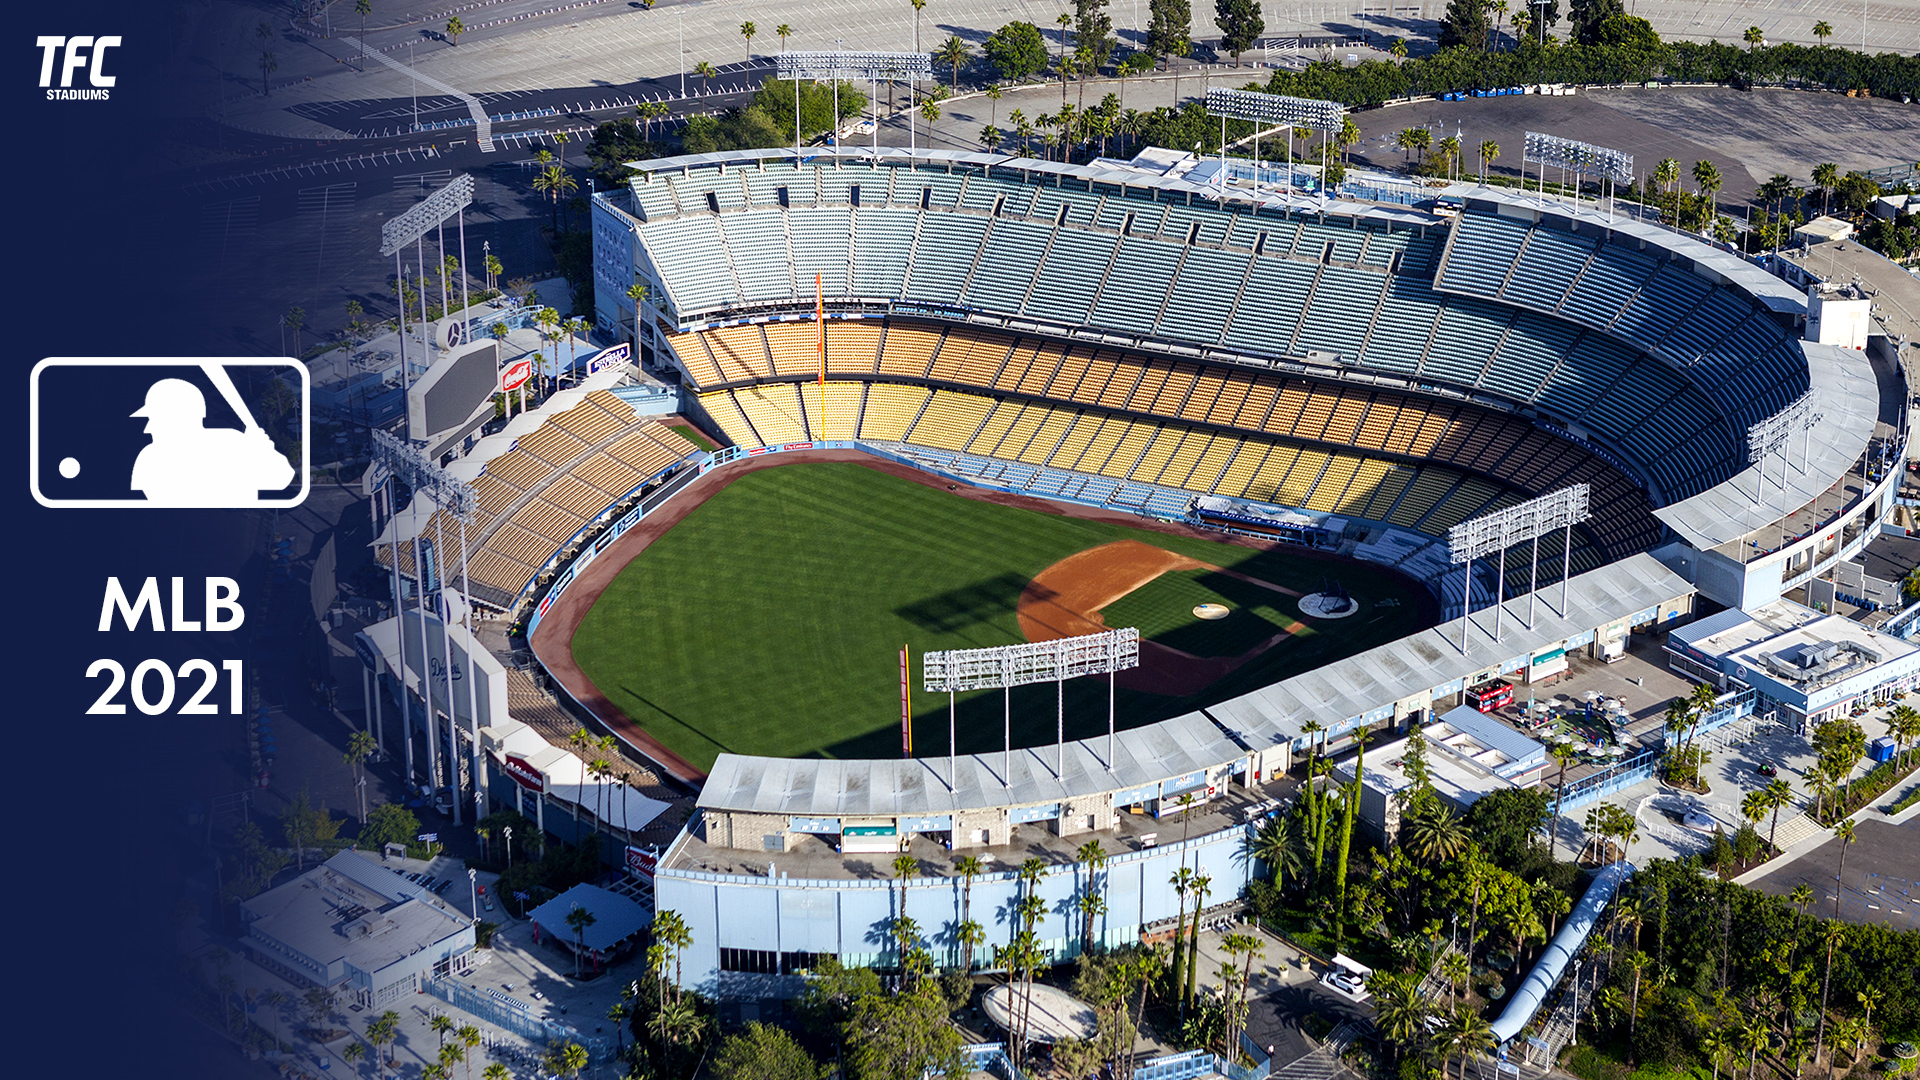 MLB Stadiums 2021 - TFC Stadiums